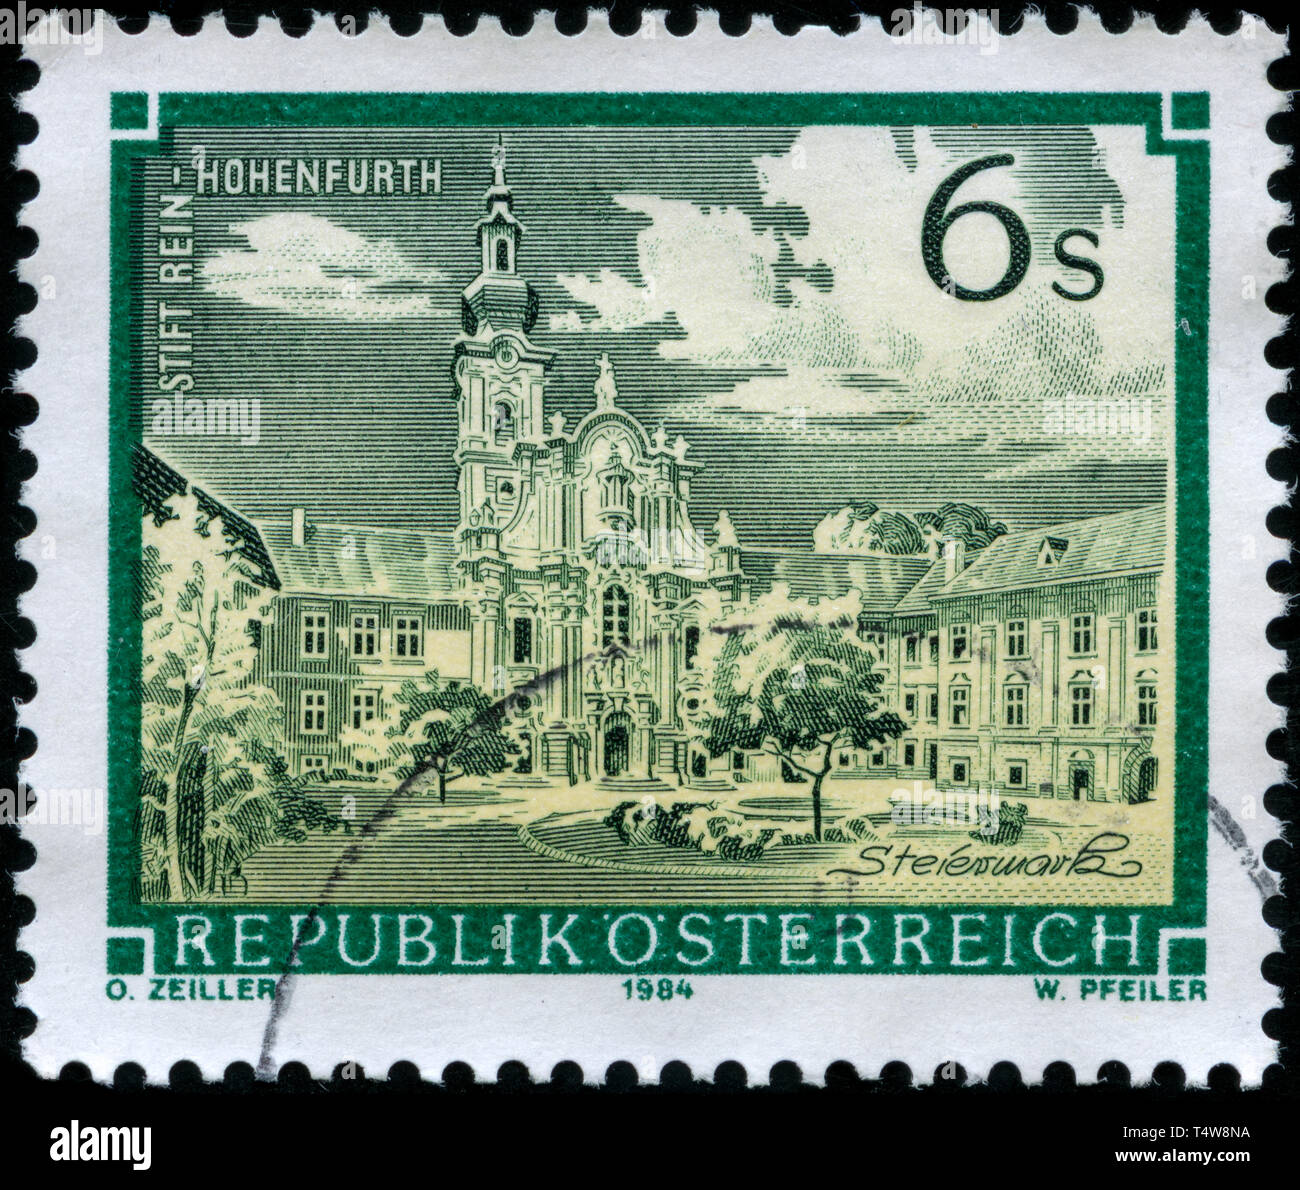 Timbre-poste de l'Autriche dans les Monastères et abbayes série émise en 1984 Banque D'Images